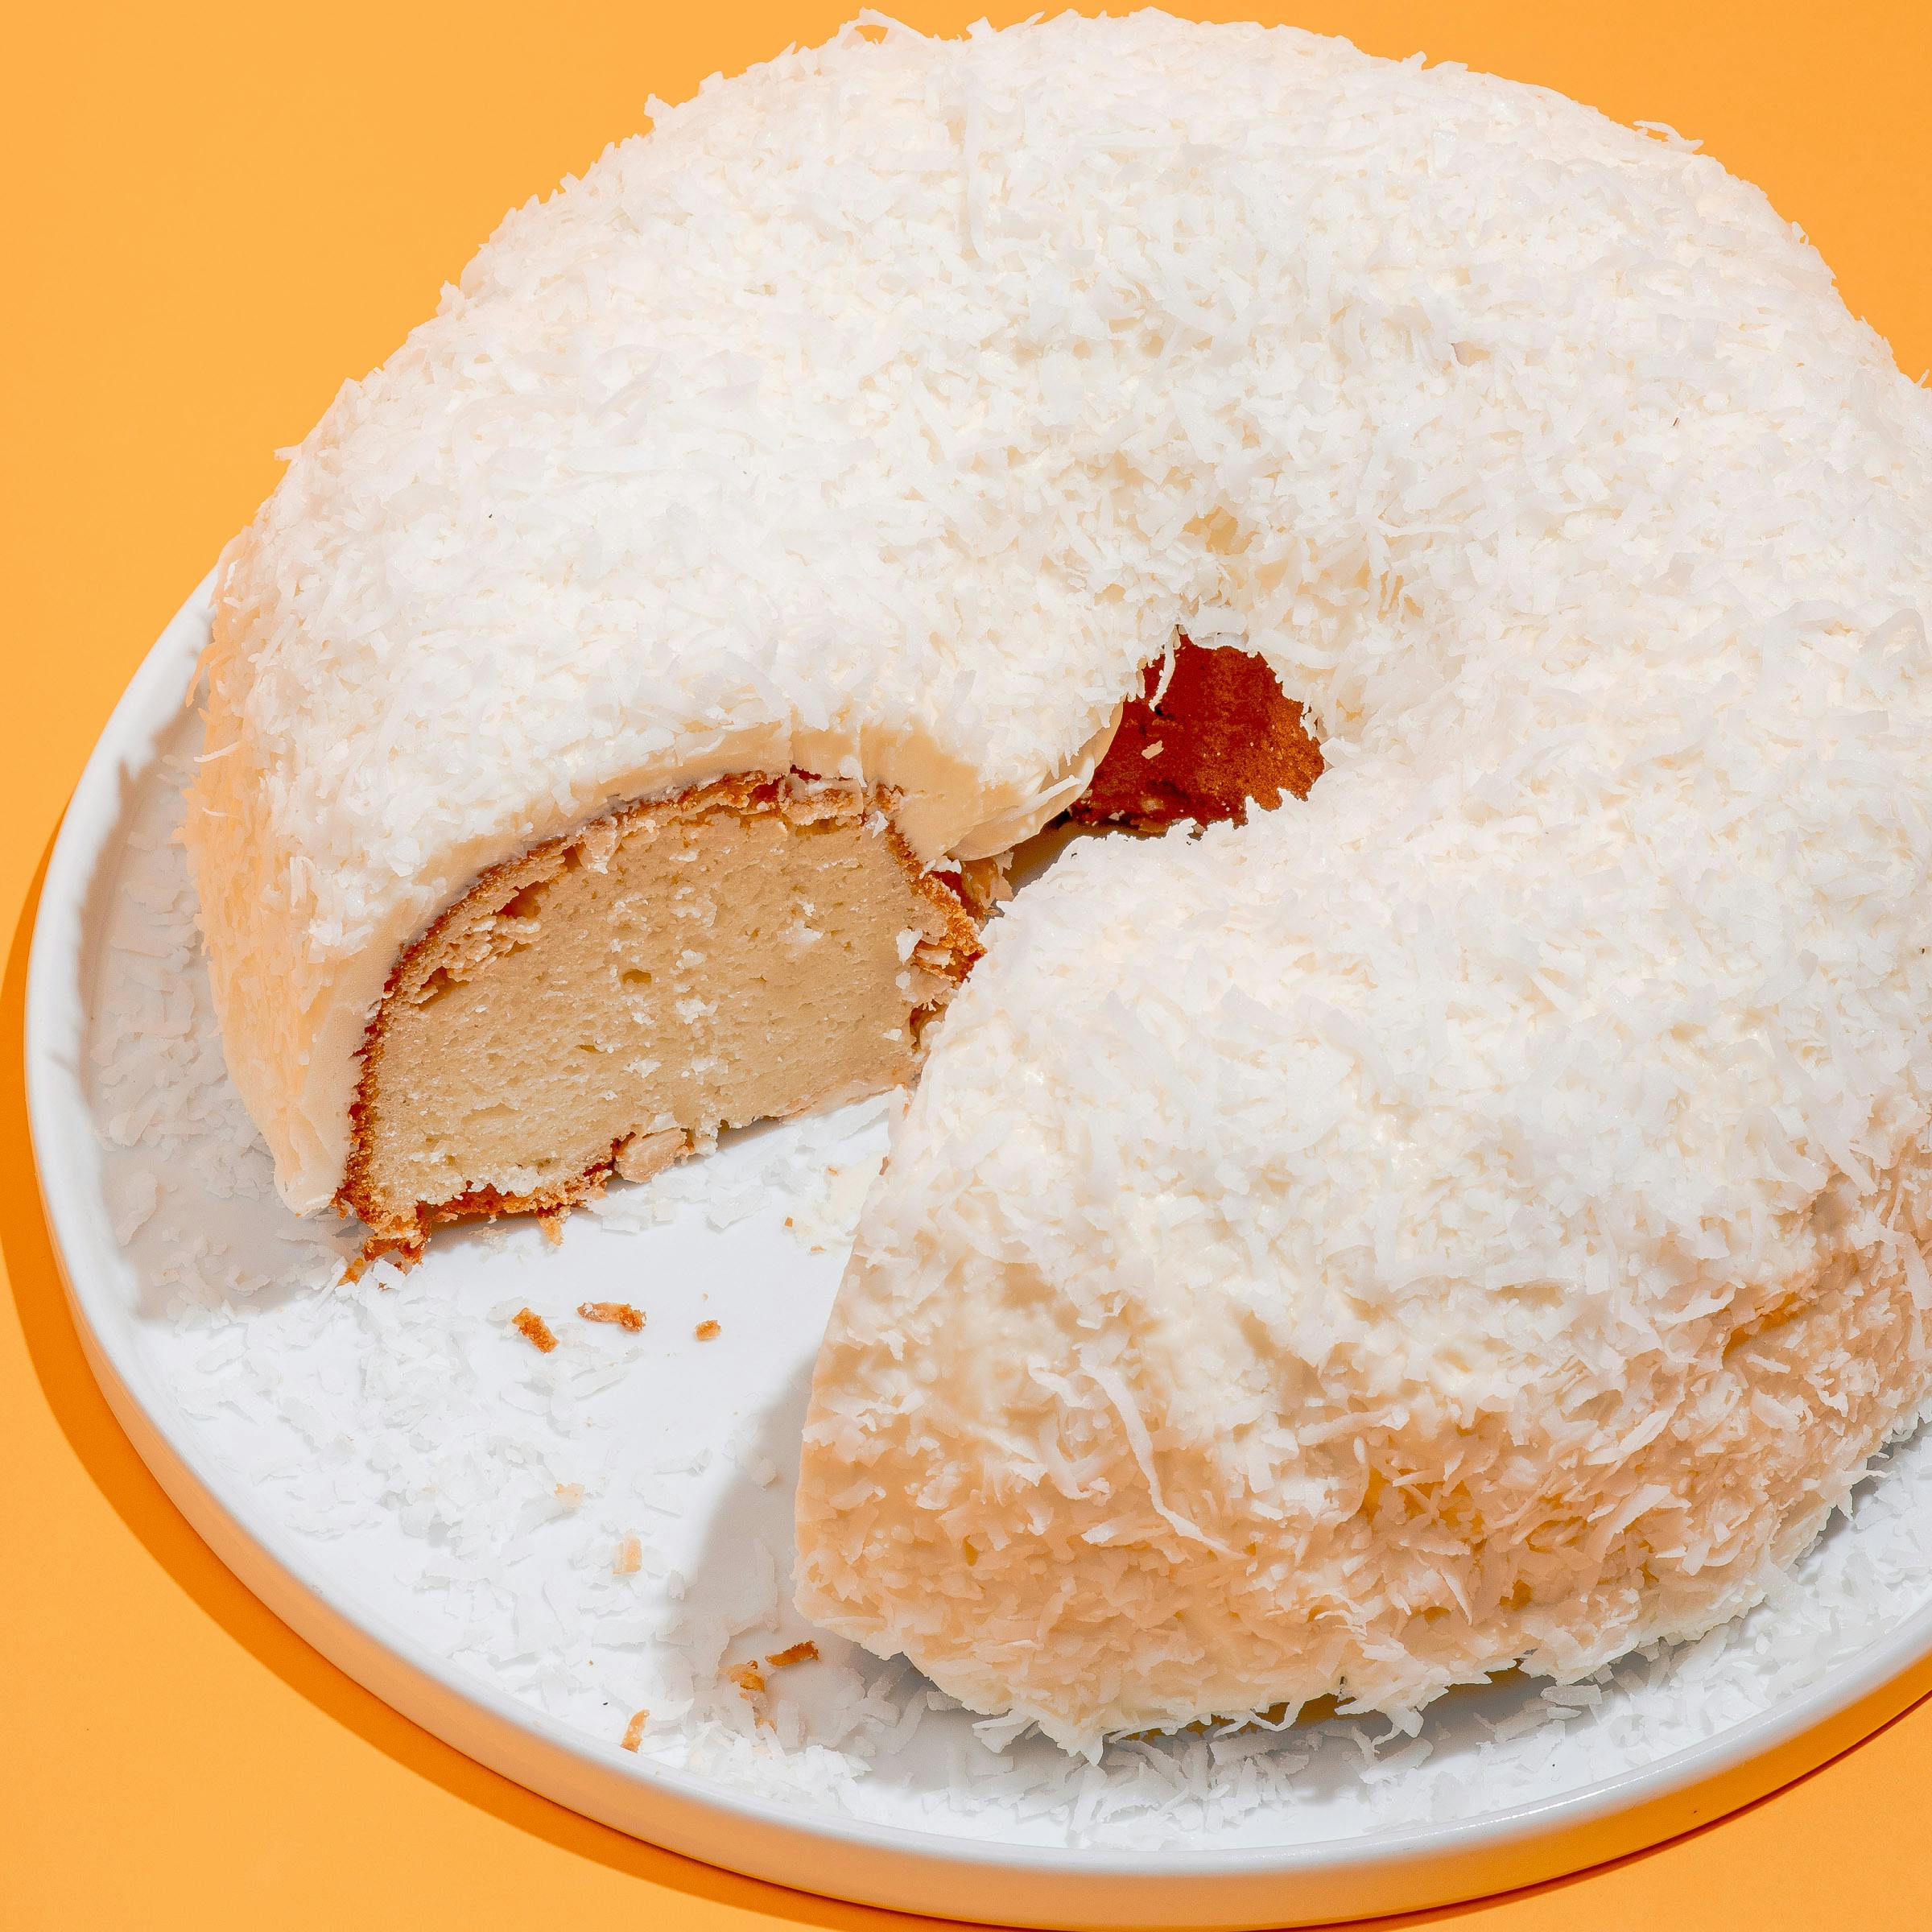 Tom Cruise Coconut Cake Bakery Doan's - It gets eaten ...